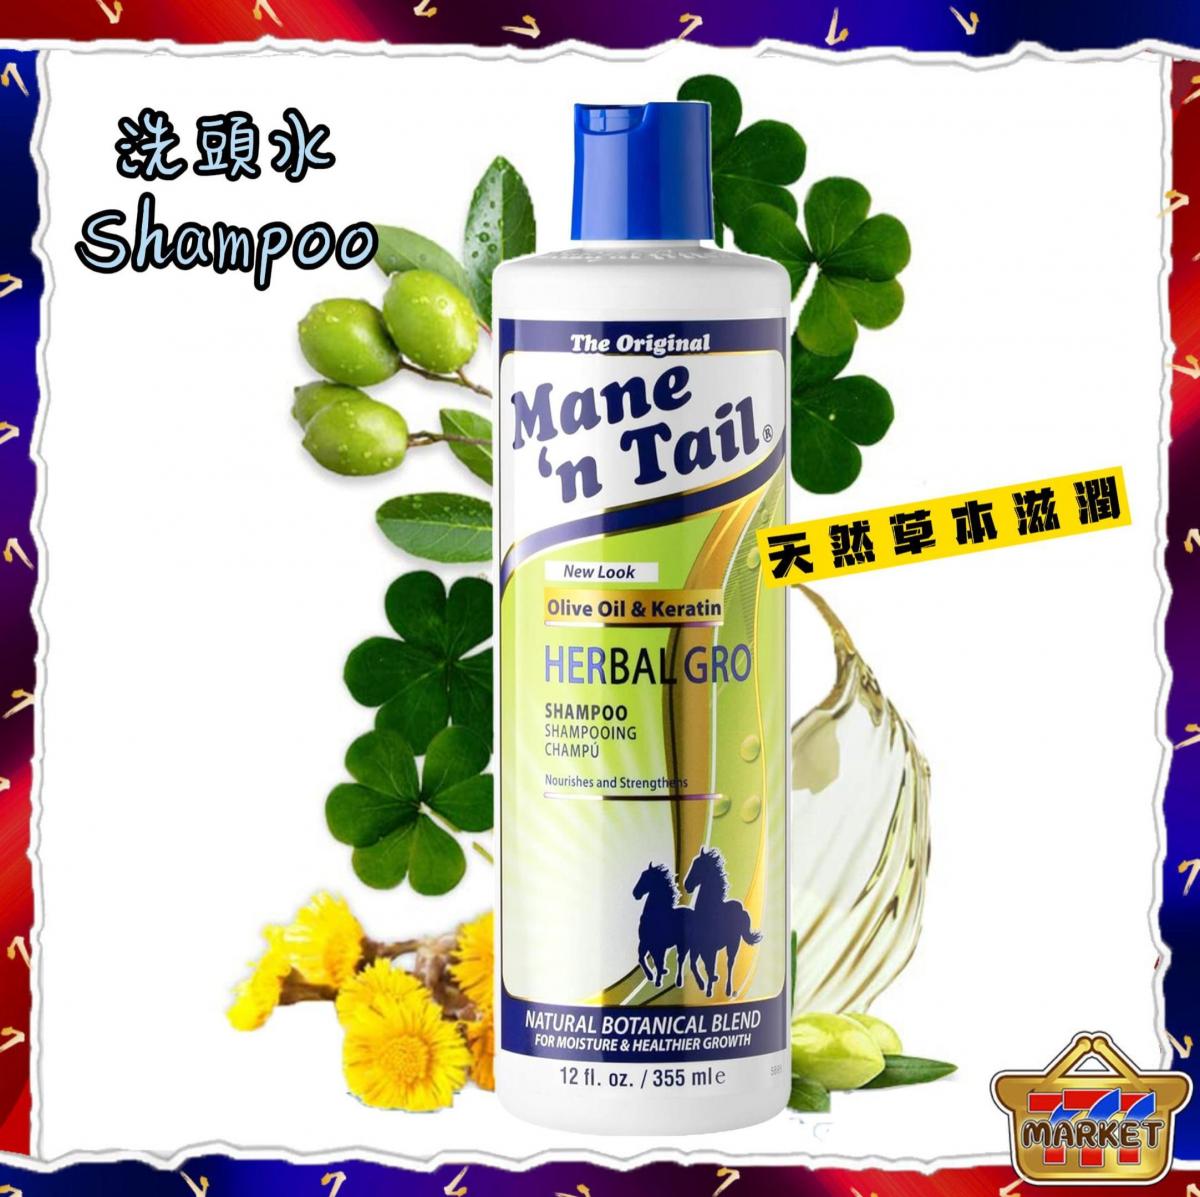 【天然草本配方】Mane n Tail, Herbal Gro 洗頭水 (355ml) (平行進口) 橄欖油複合物,有助於強化和滋養頭髮